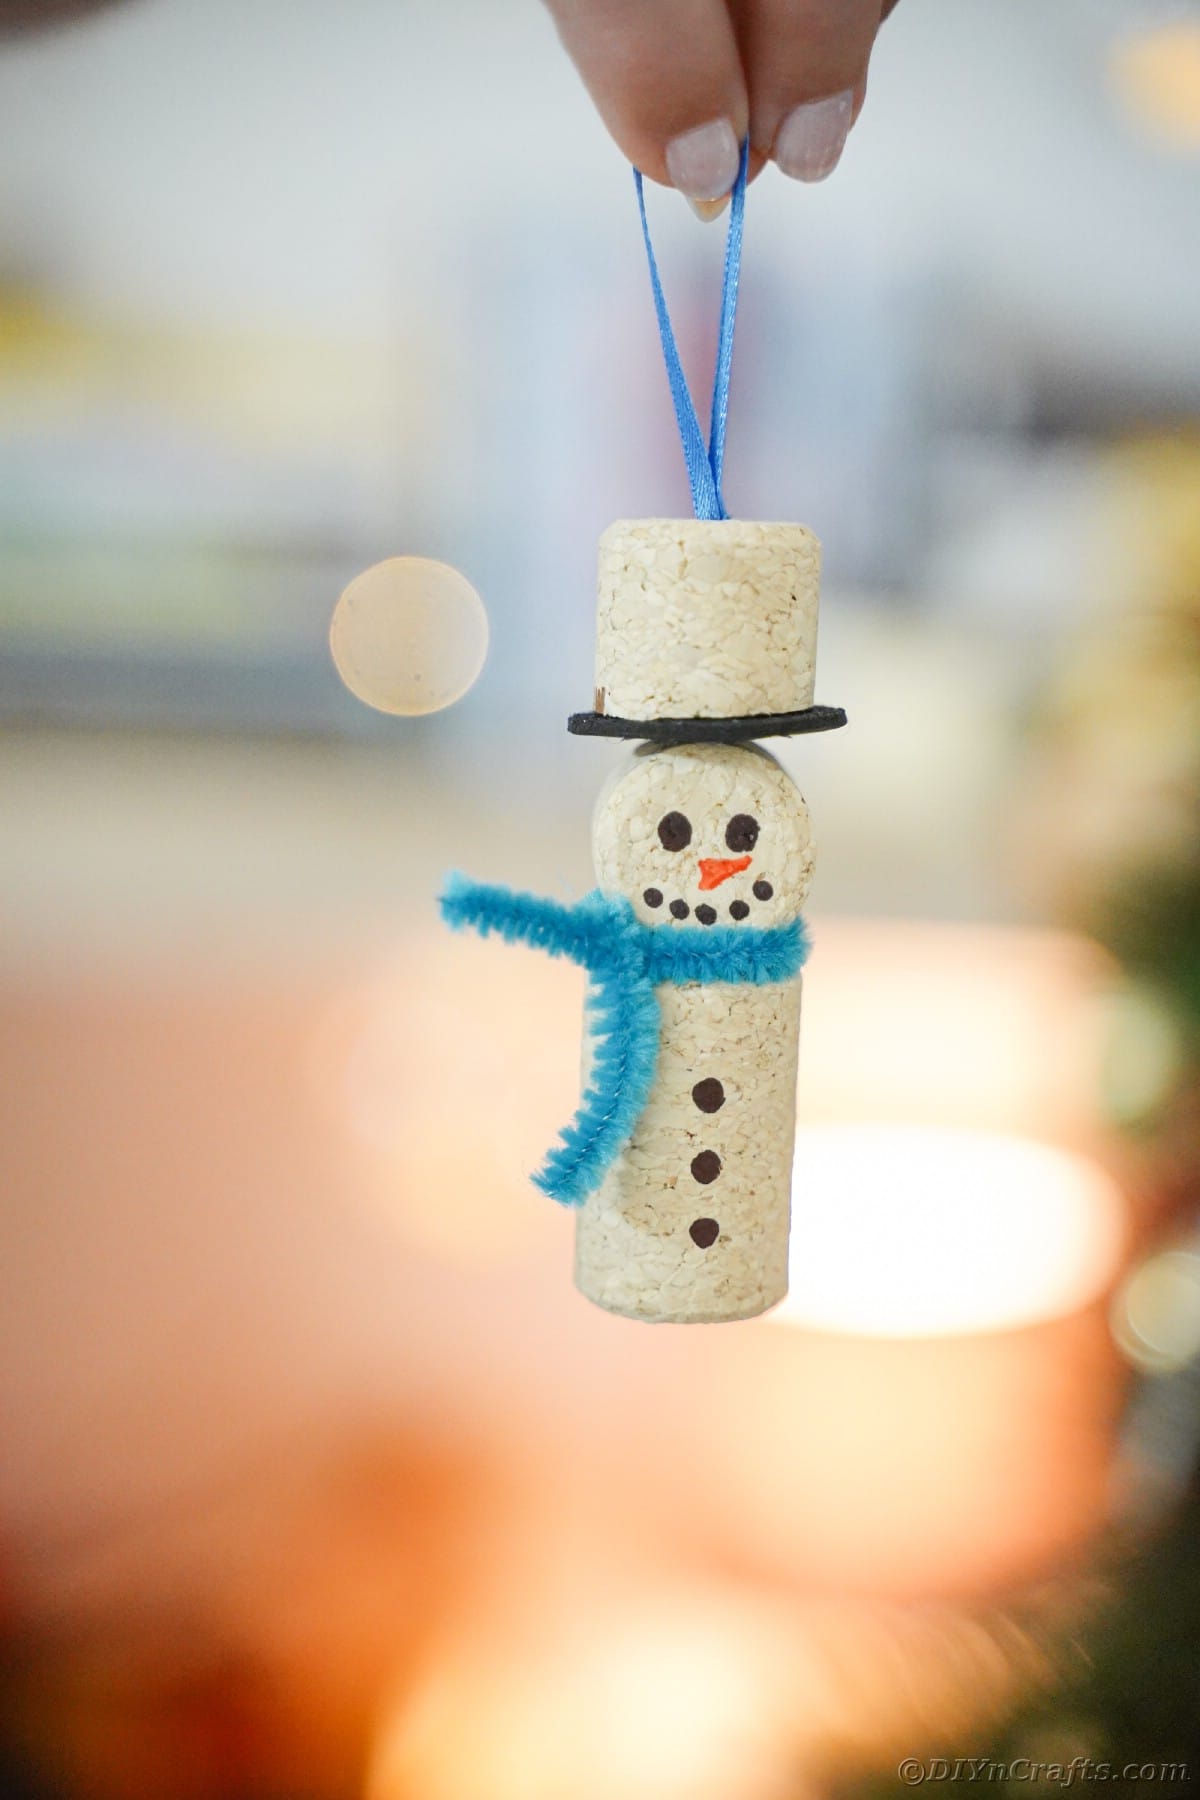 snežak iz plute z modrim šalom, ki ga držijo pred utripajočimi lučmi